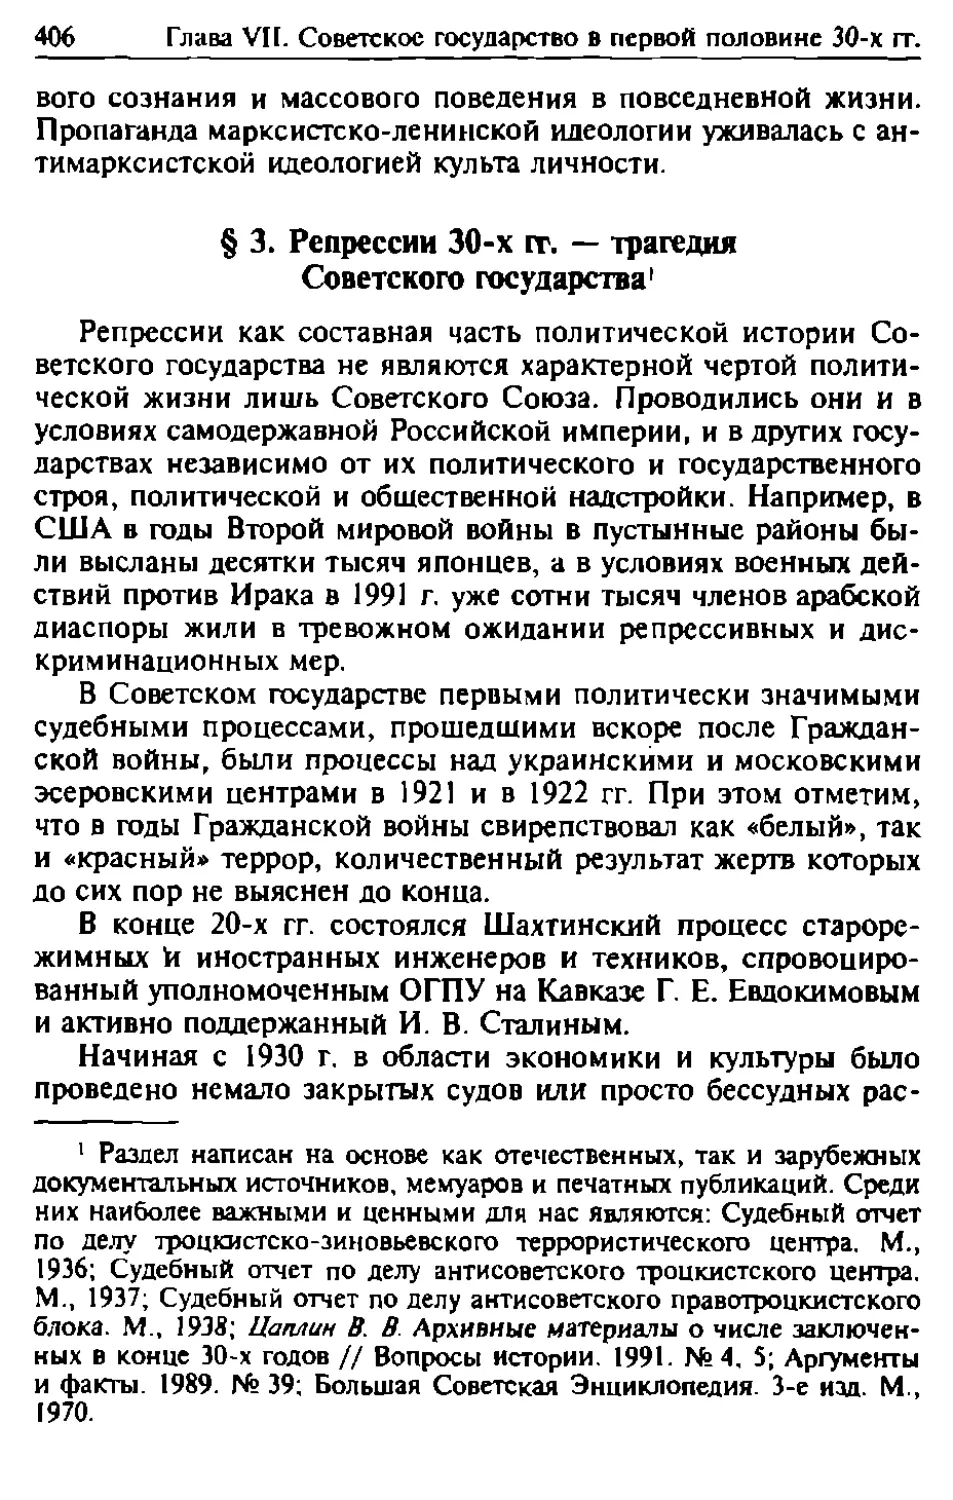 § 3. Репрессии 30-х гг. — трагедия Советского государства